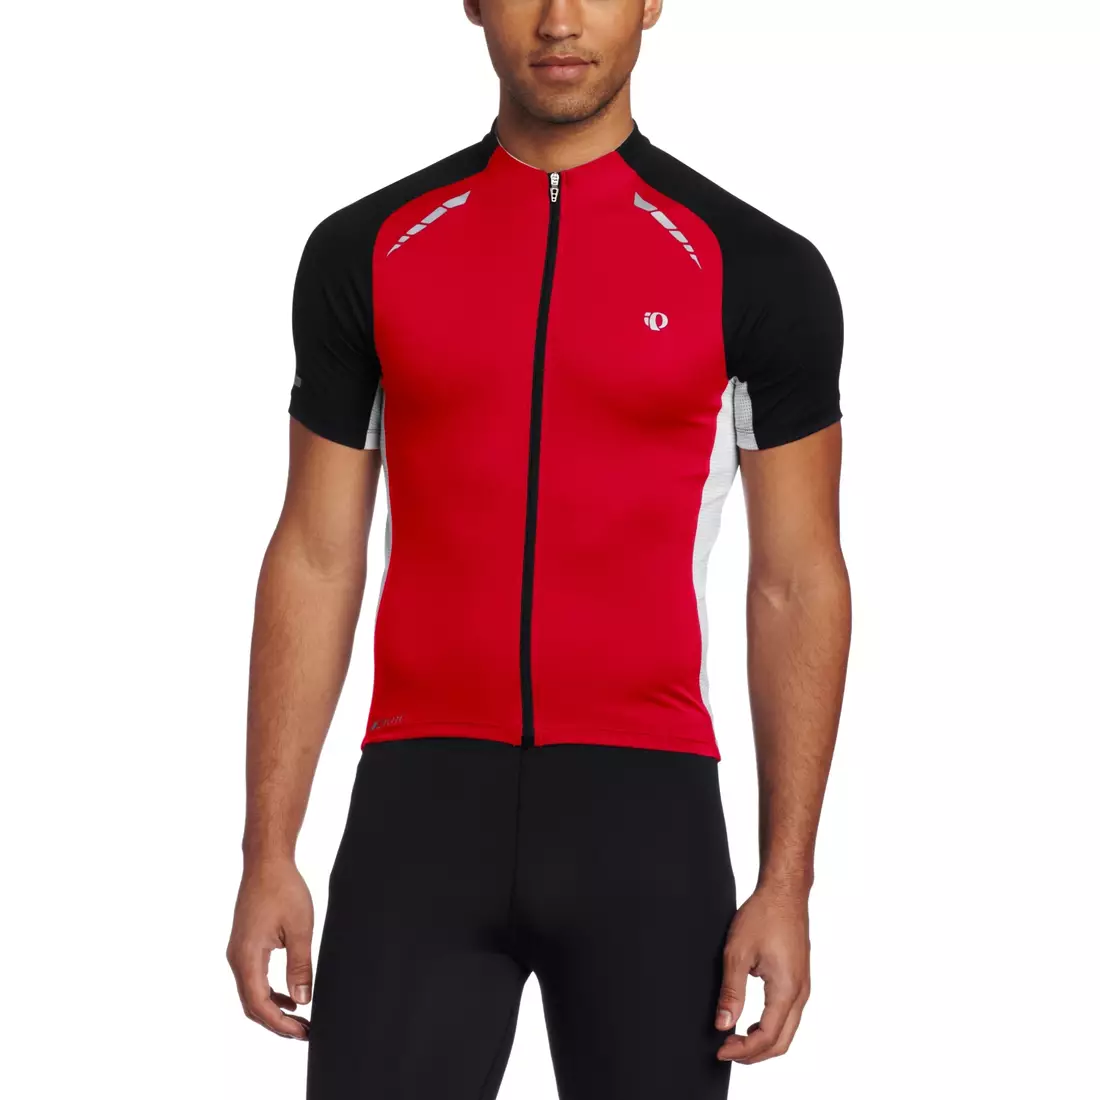 PEARL IZUMI - 11121311-3DJ ELITE PURSUIT - tricou ușor de ciclism, culoare: Roșu